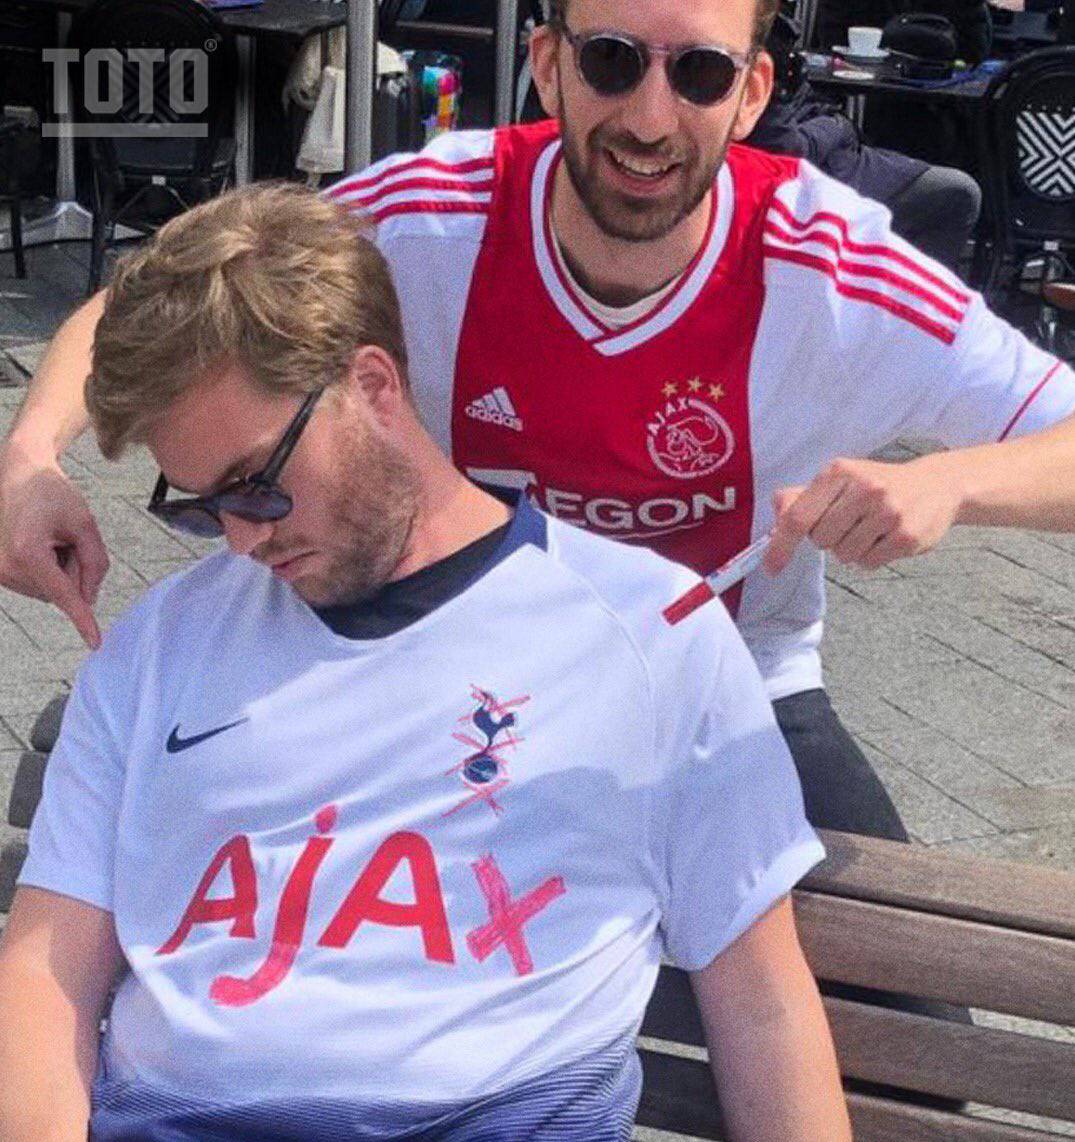 Što bude kada navijač Spursa zaspi, a naiđe navijač Ajaxa?